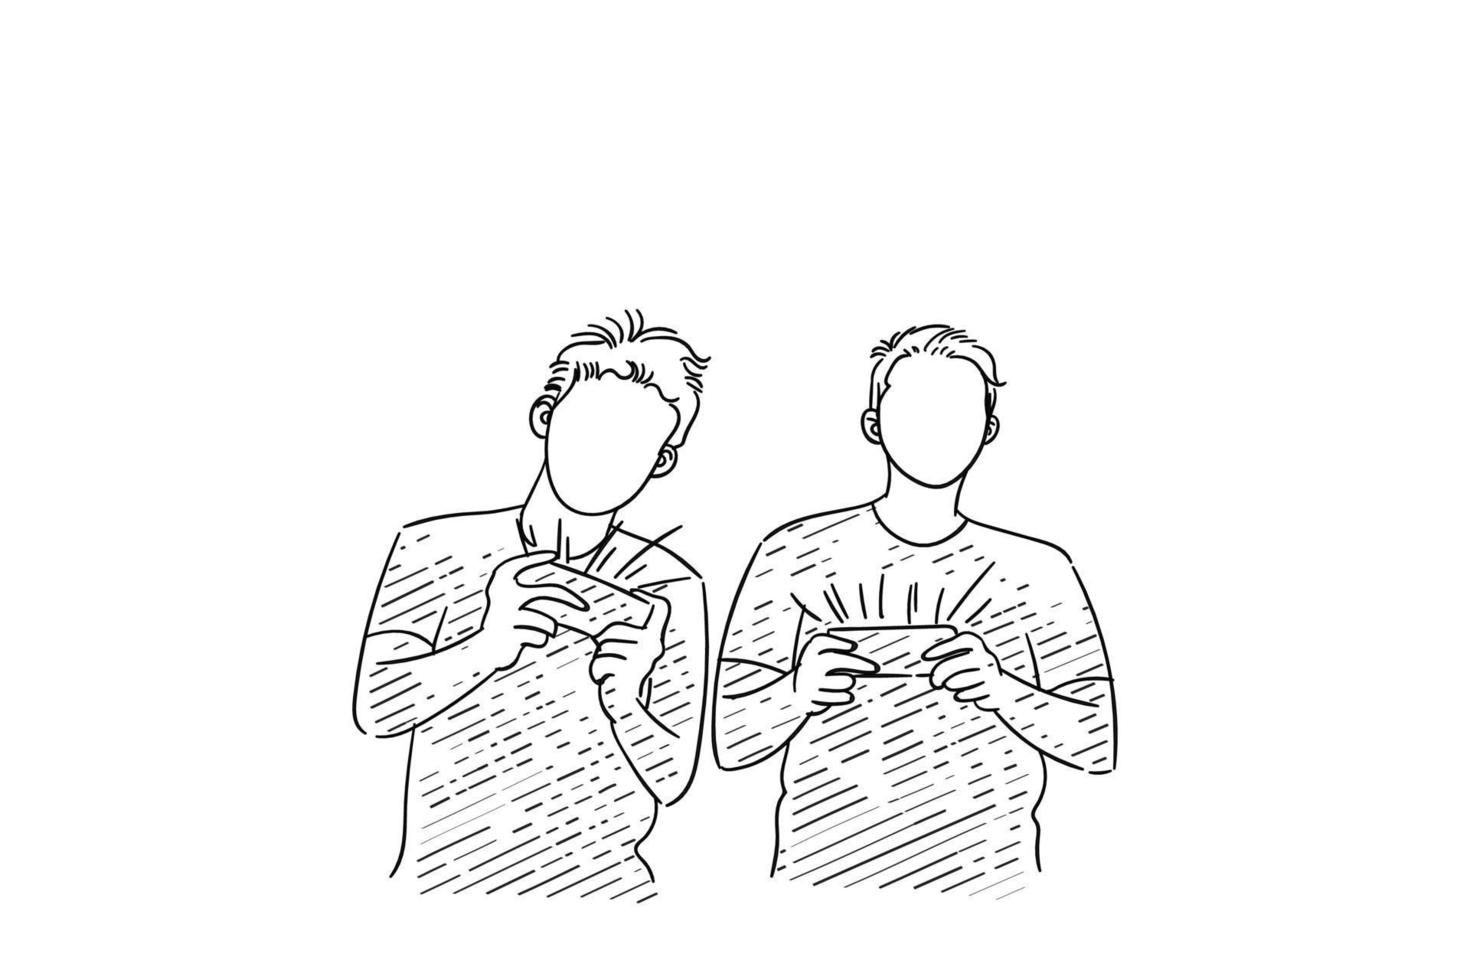 ilustração de dois amigos do sexo masculino jogando nas